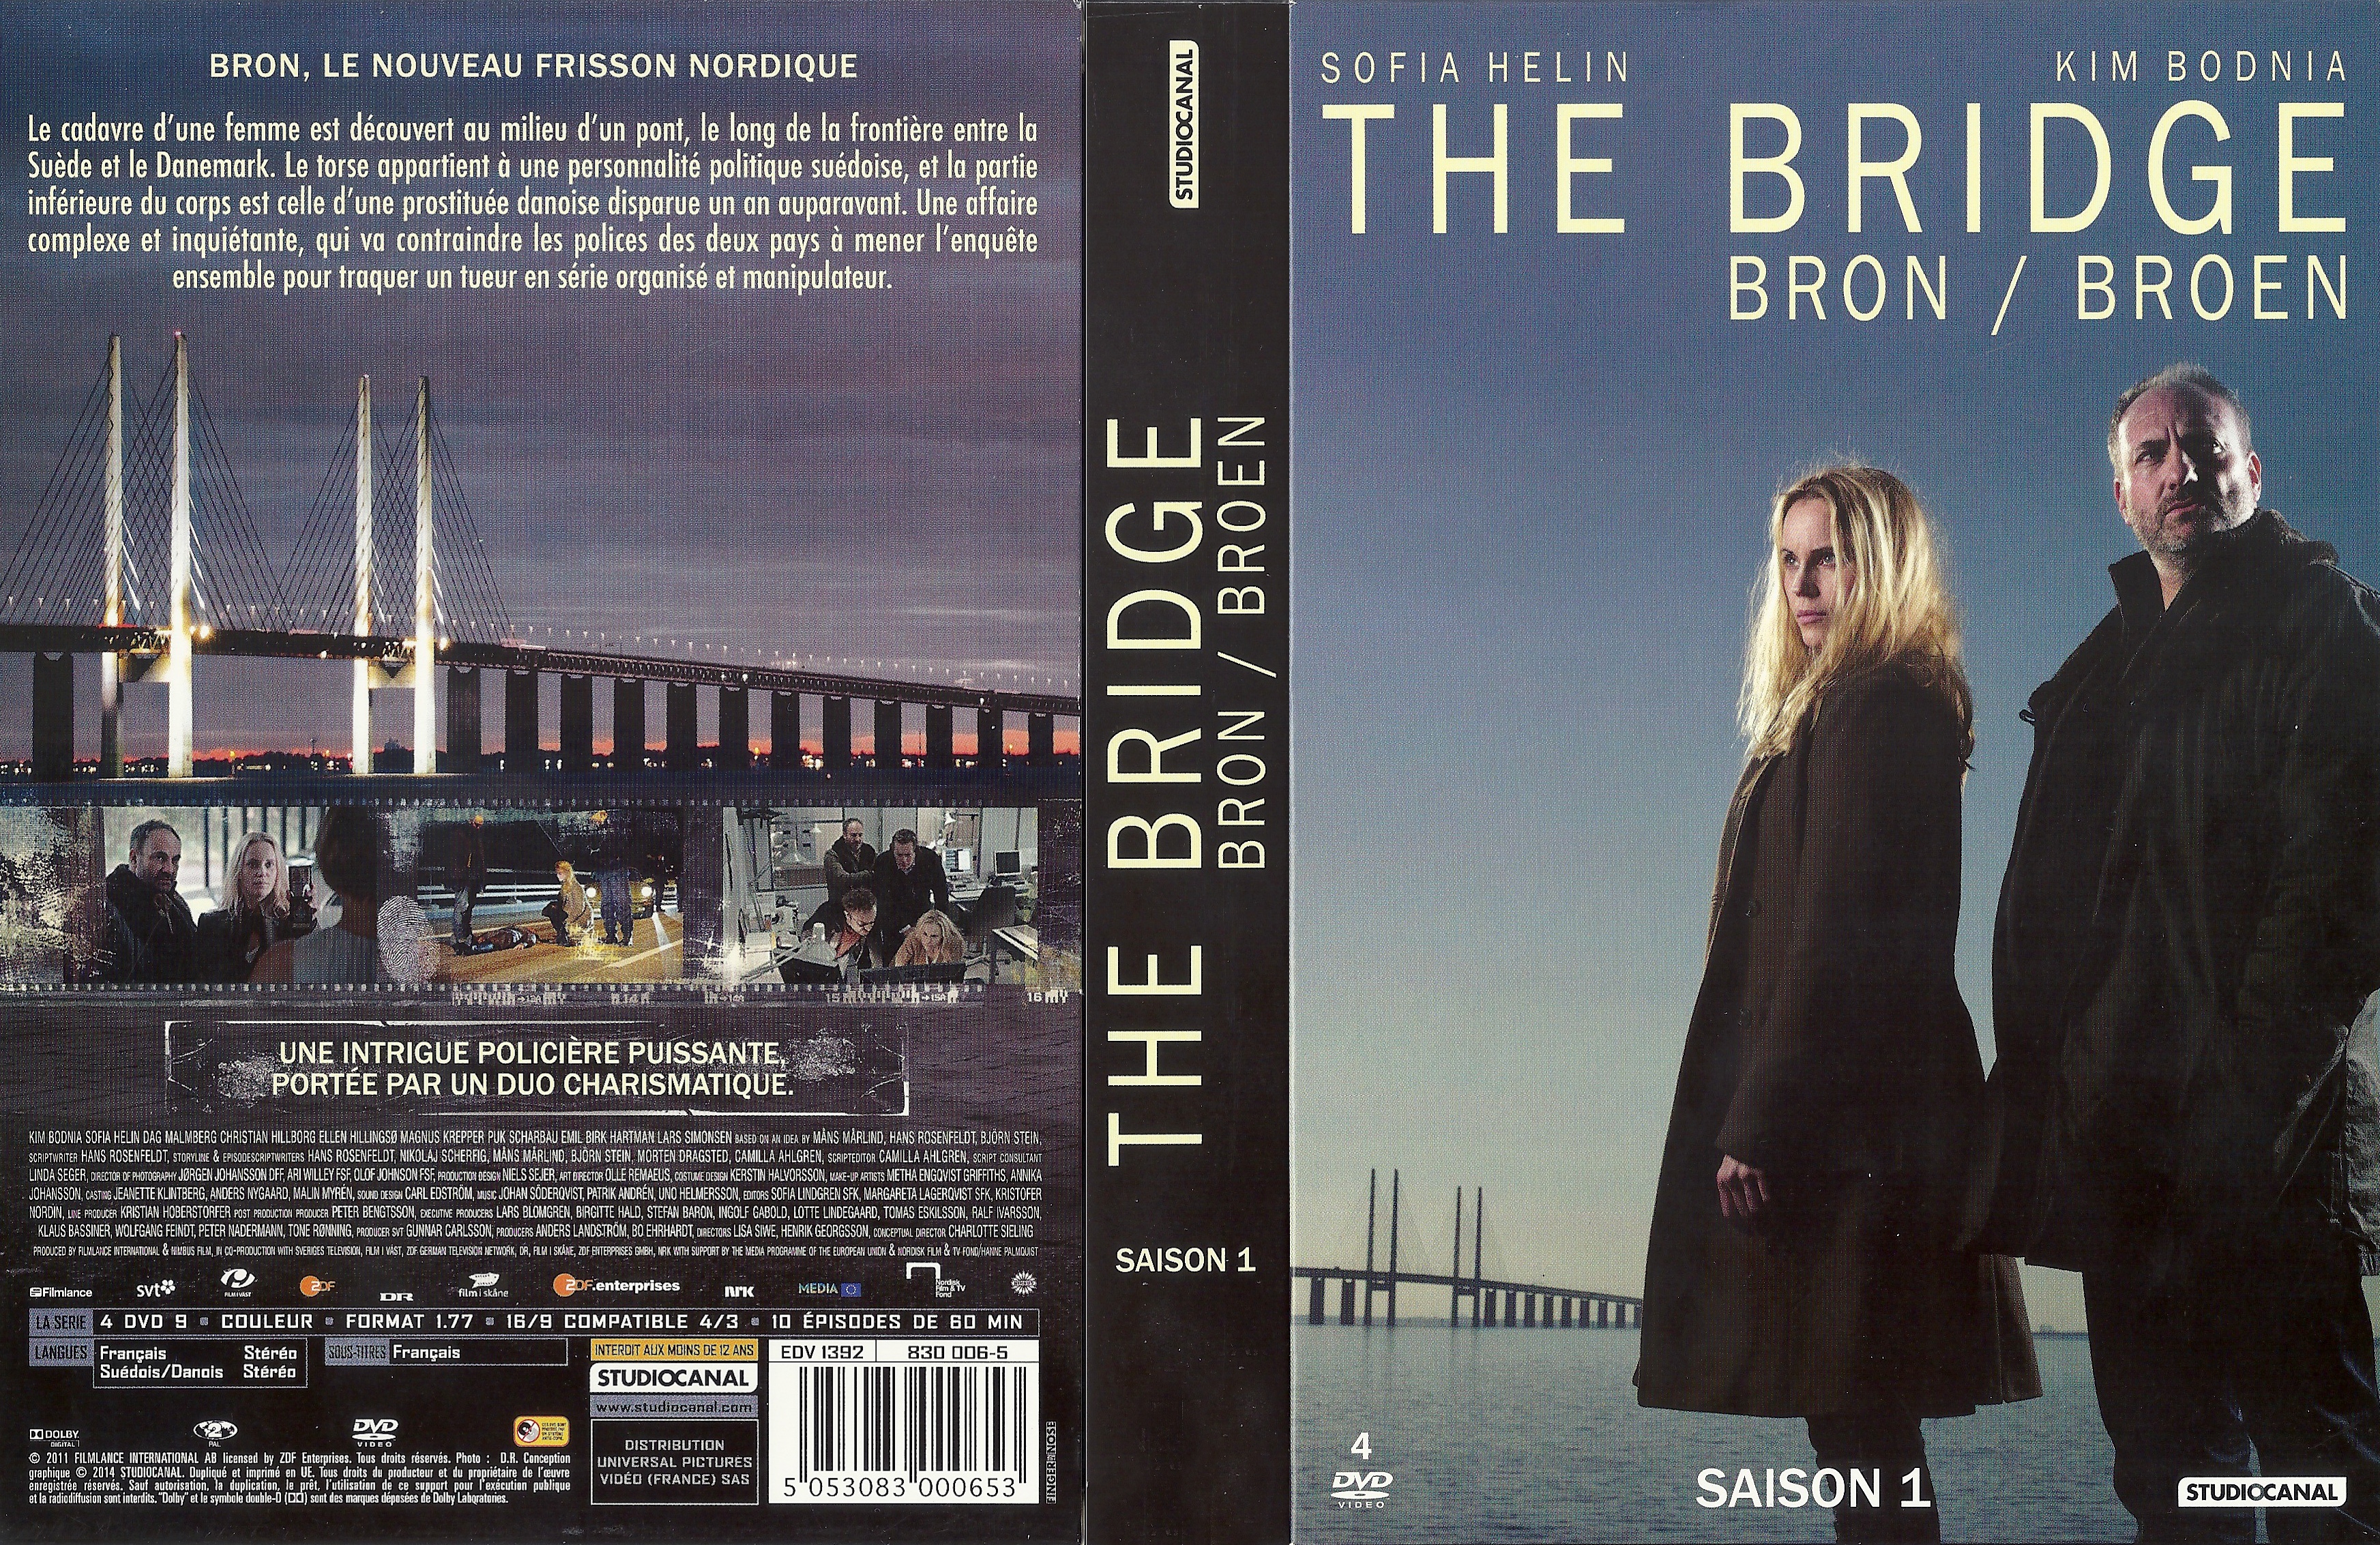 Jaquette DVD The Bridge Saison 1